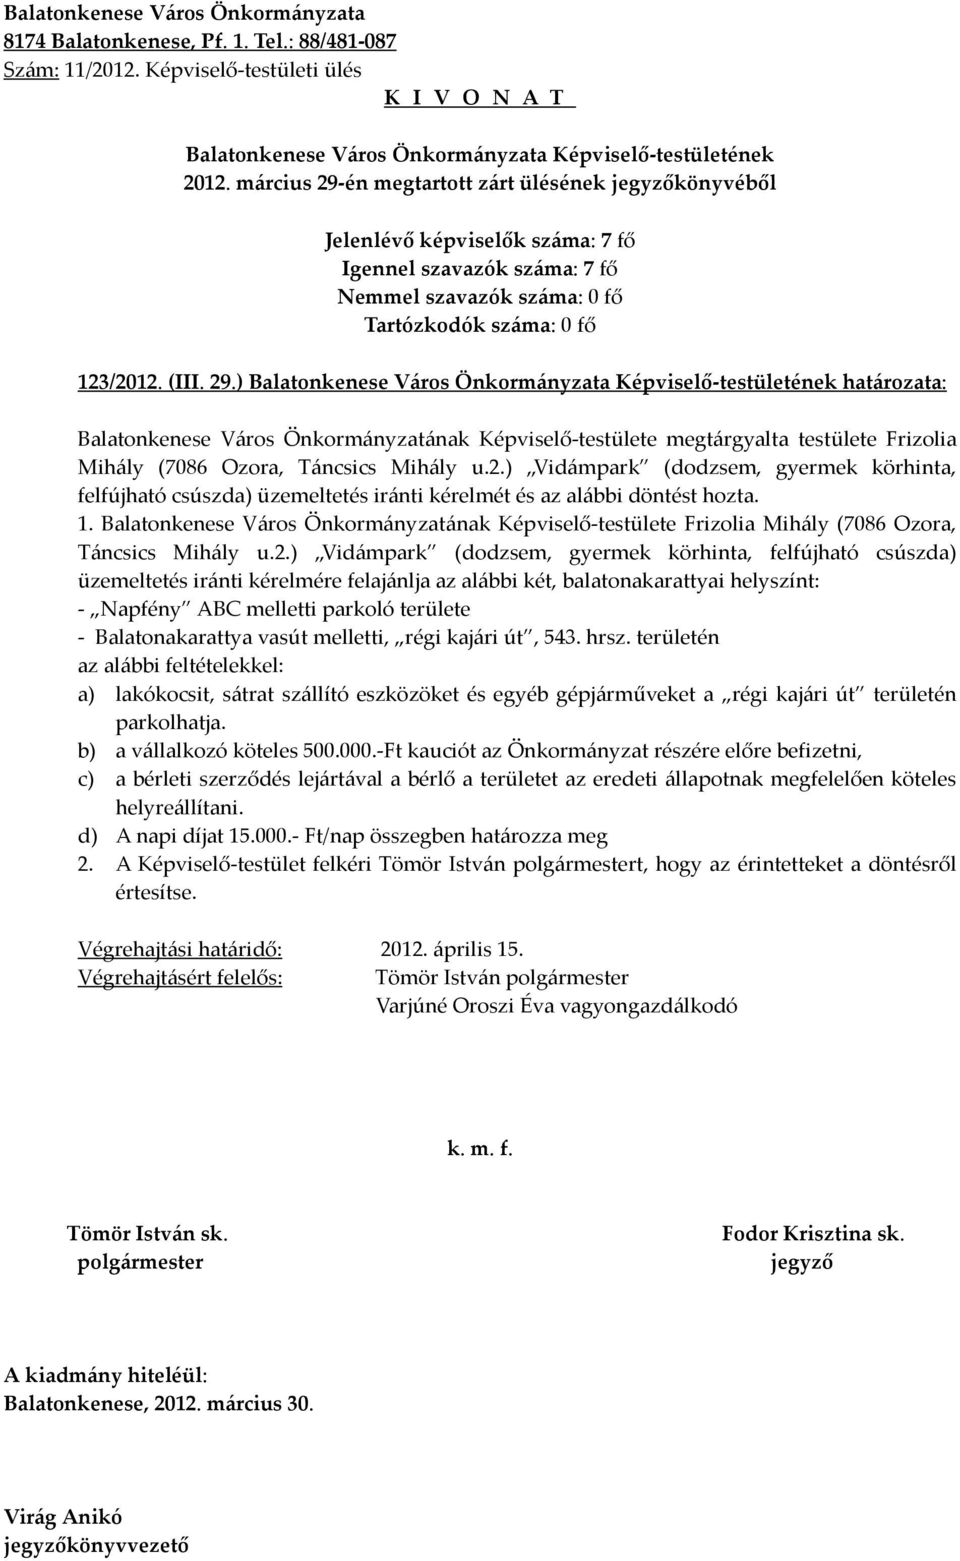 Balatonkenese Város Önkormányzatának Képviselő-testülete Frizolia Mihály (7086 Ozora, Táncsics Mihály u.2.